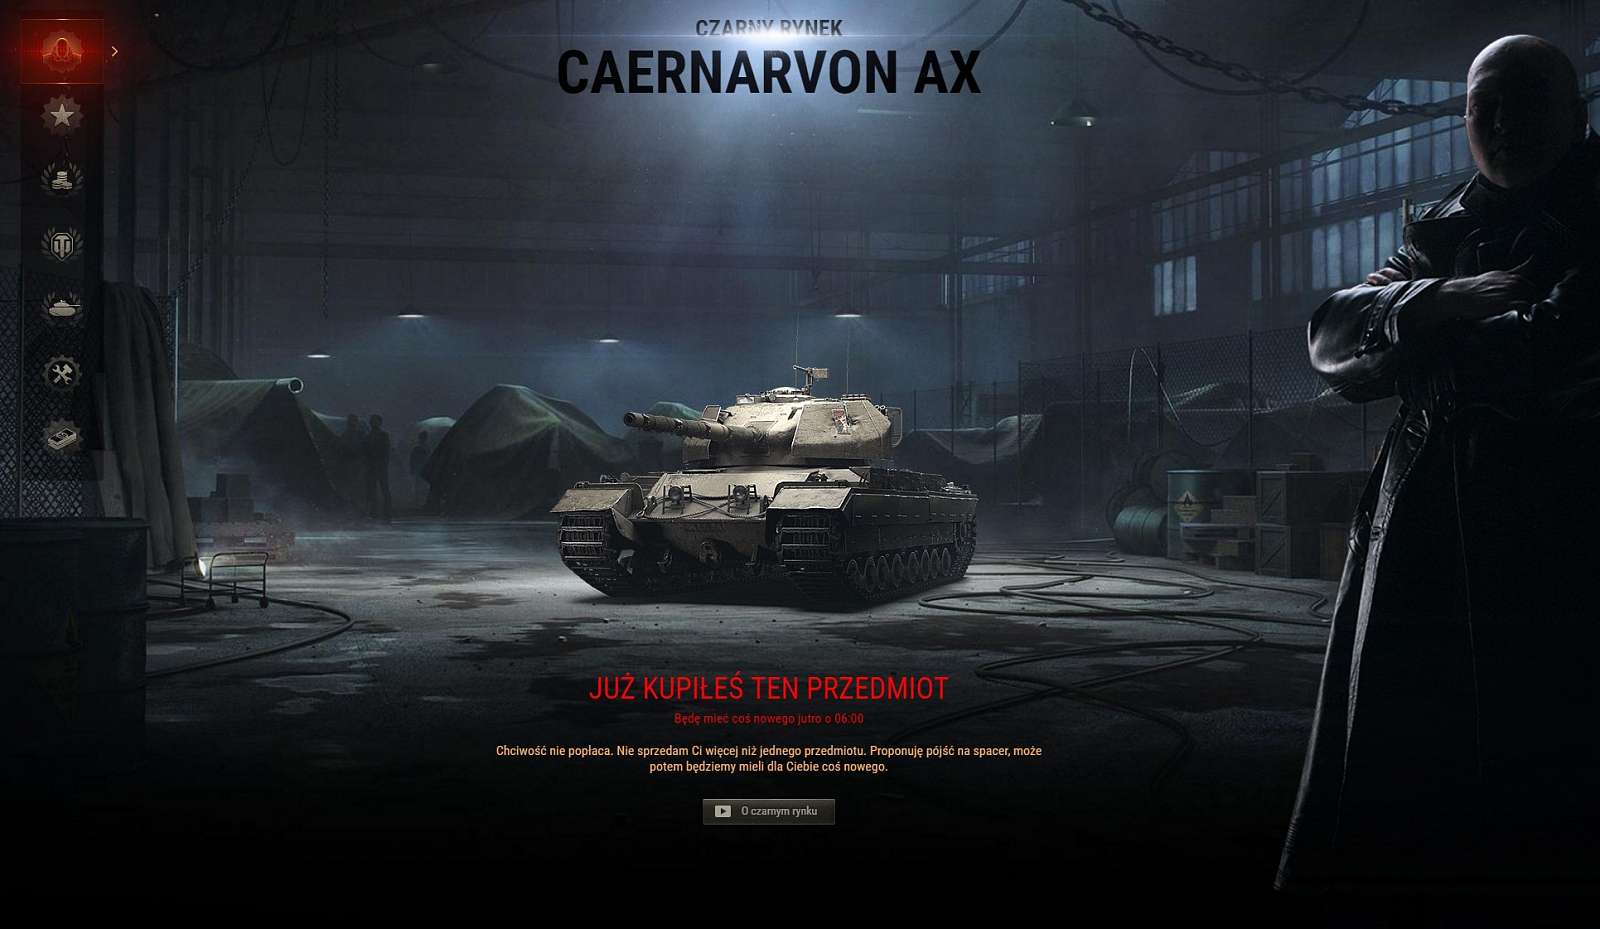 [WoT] Caernarvon Action X vyprodán velice rychle, ale ne bez problémů